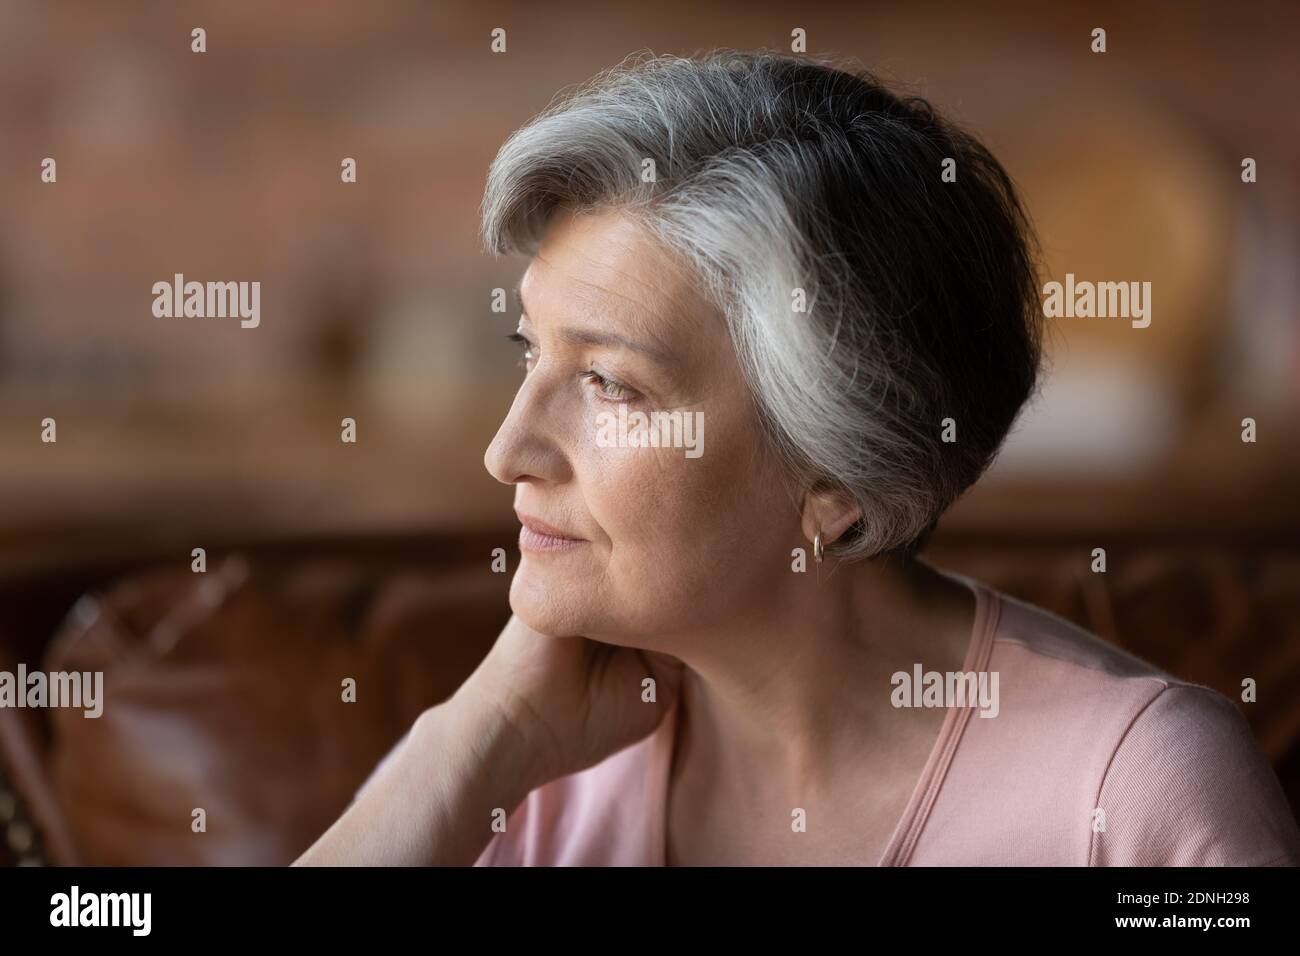 Femme mûre d'âge moyen mûr et attentionnés qui regarde au loin. Banque D'Images